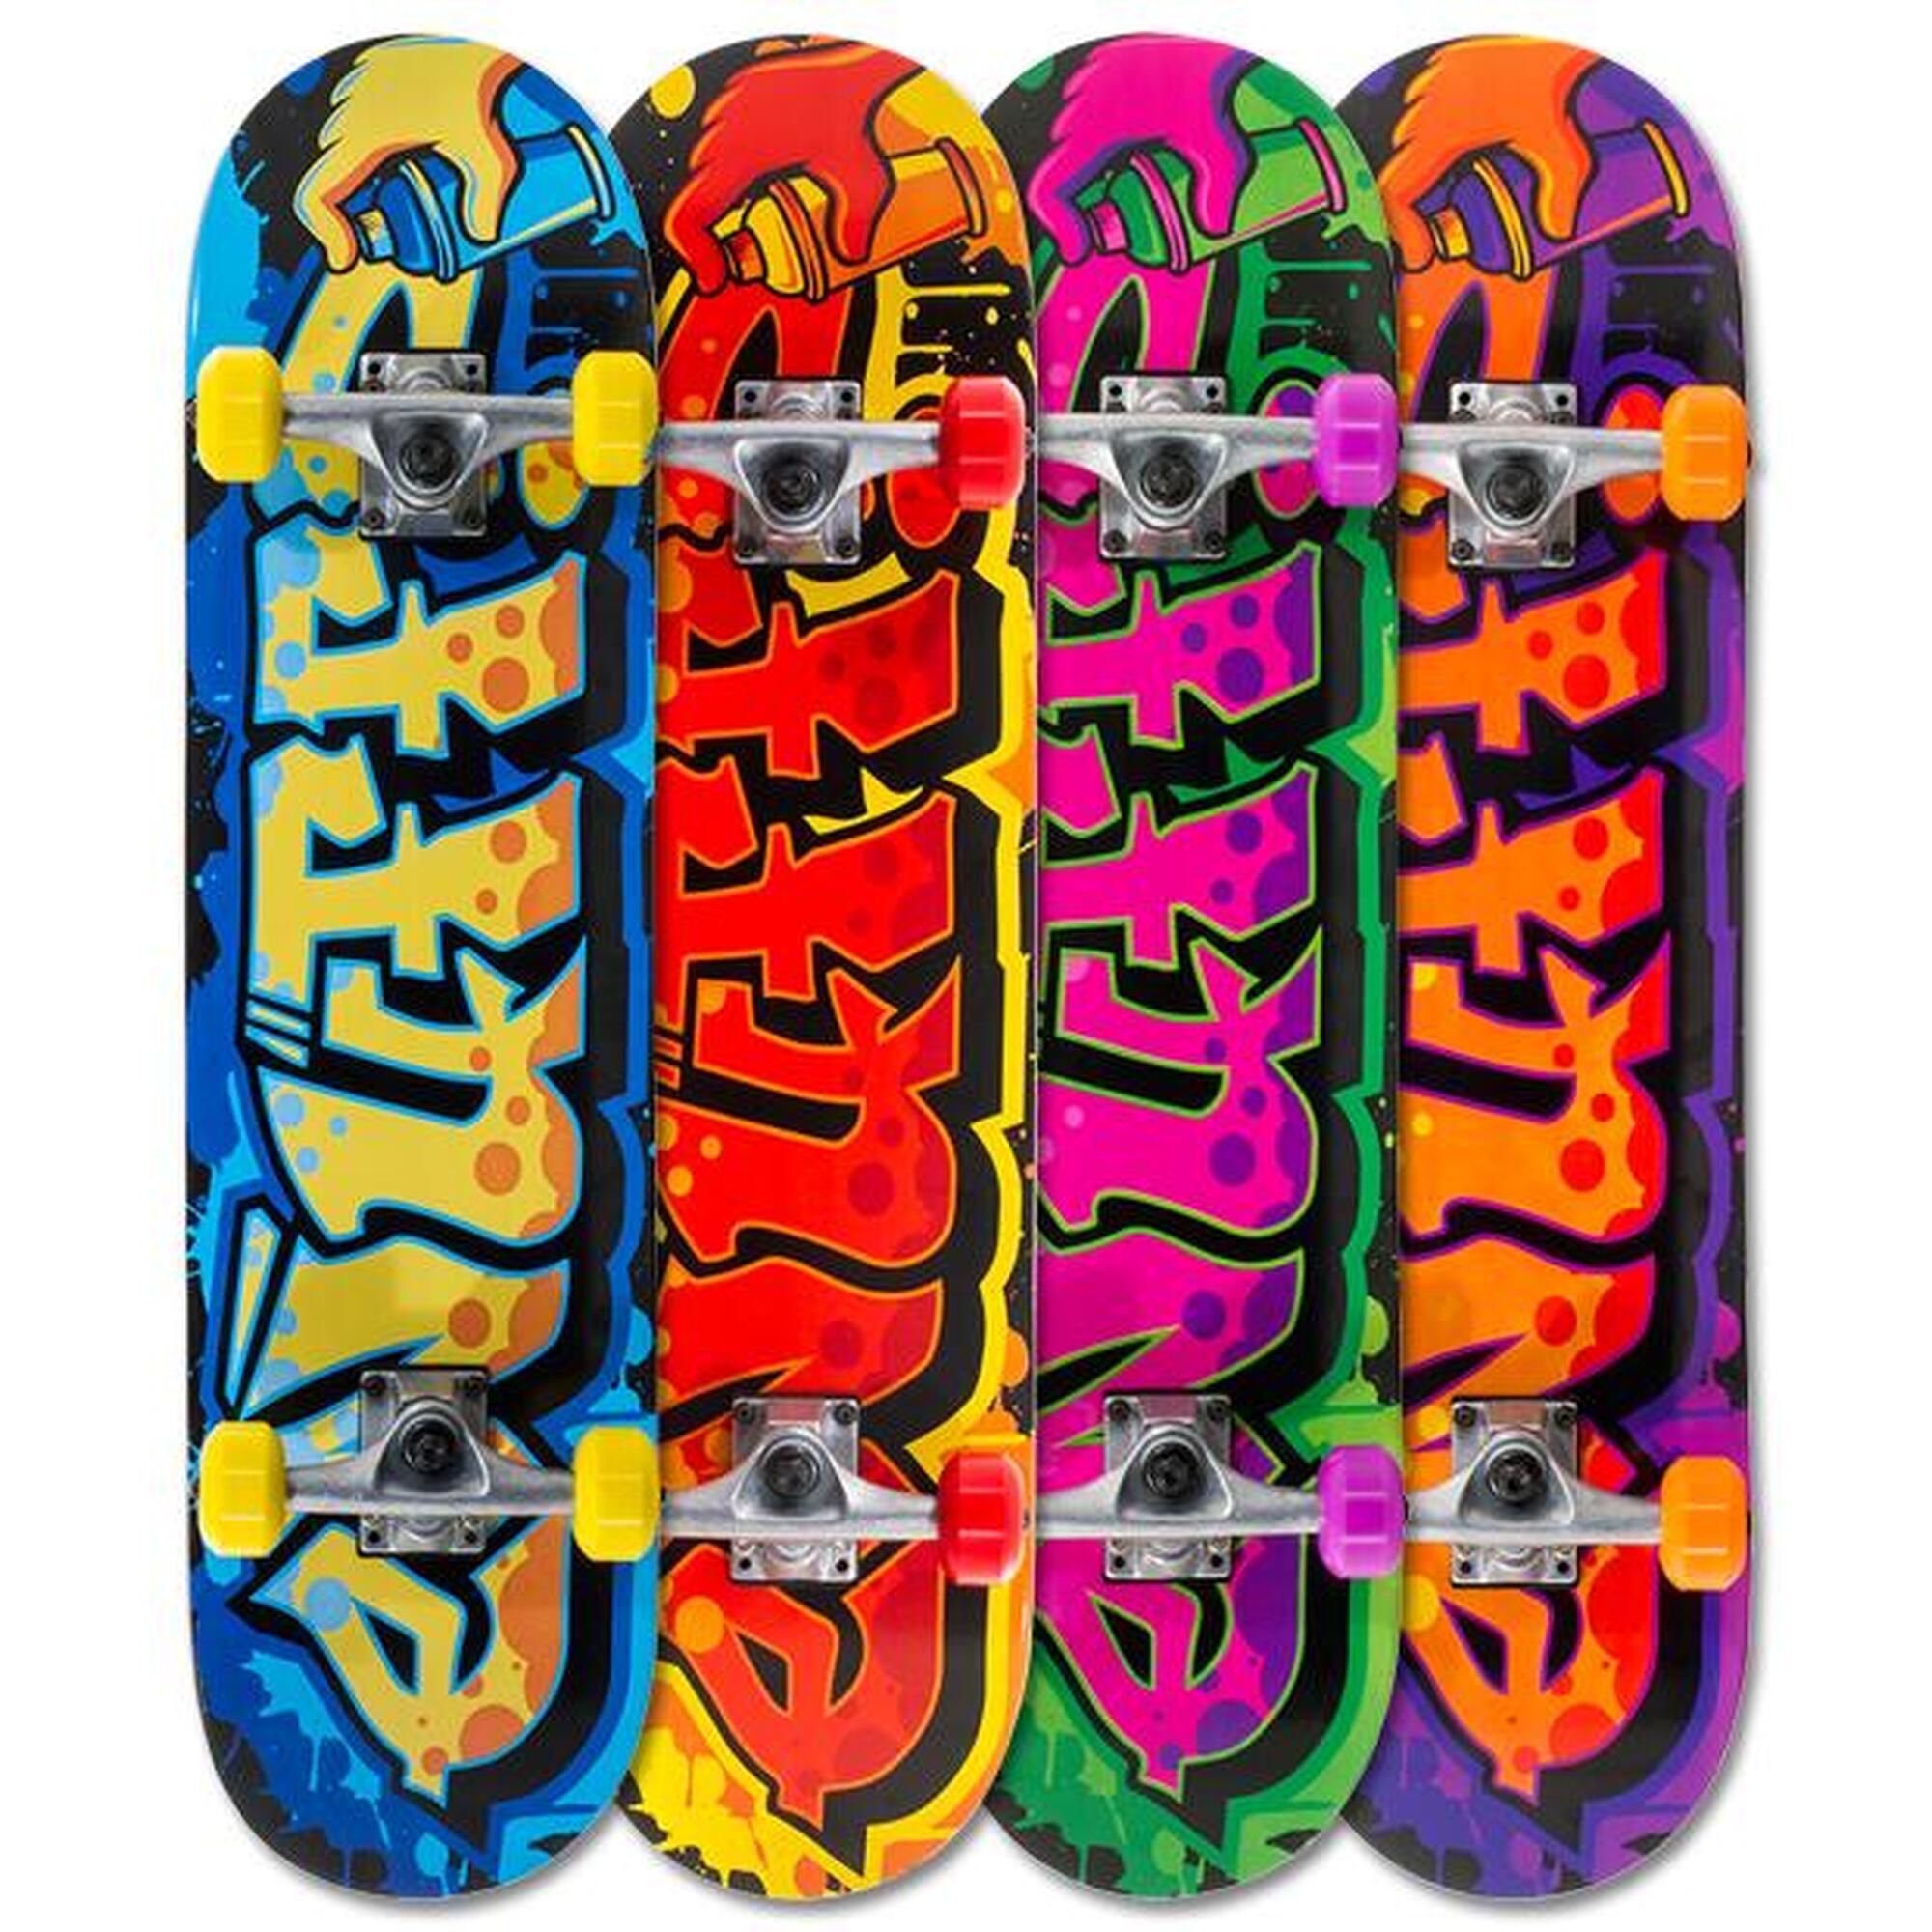 Enuff Graffiti II 7.75"x31.5" Gelb/Rot Skateboard